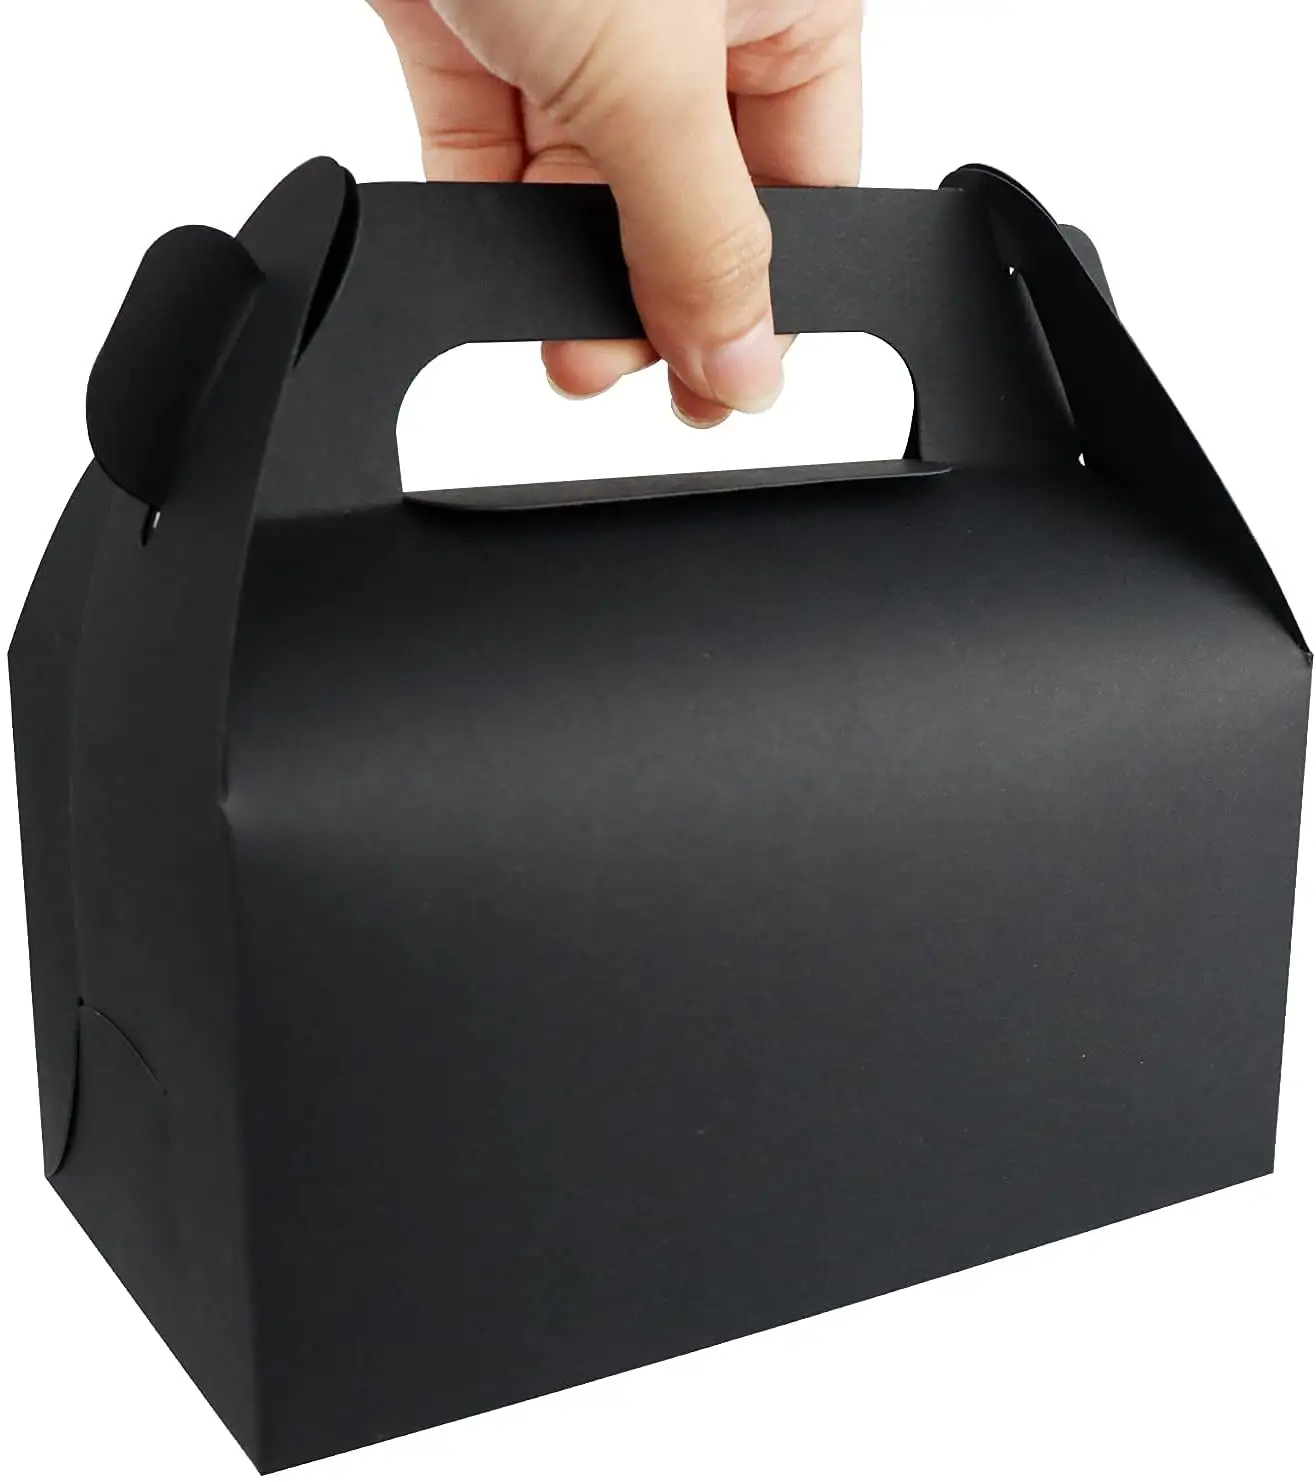 ที่กำหนดเองวันเกิดสีดำ Gable พรรคโปรดปรานกล่องของขวัญกล่องกระดาษแบบพกพาที่มีด้ามจับ